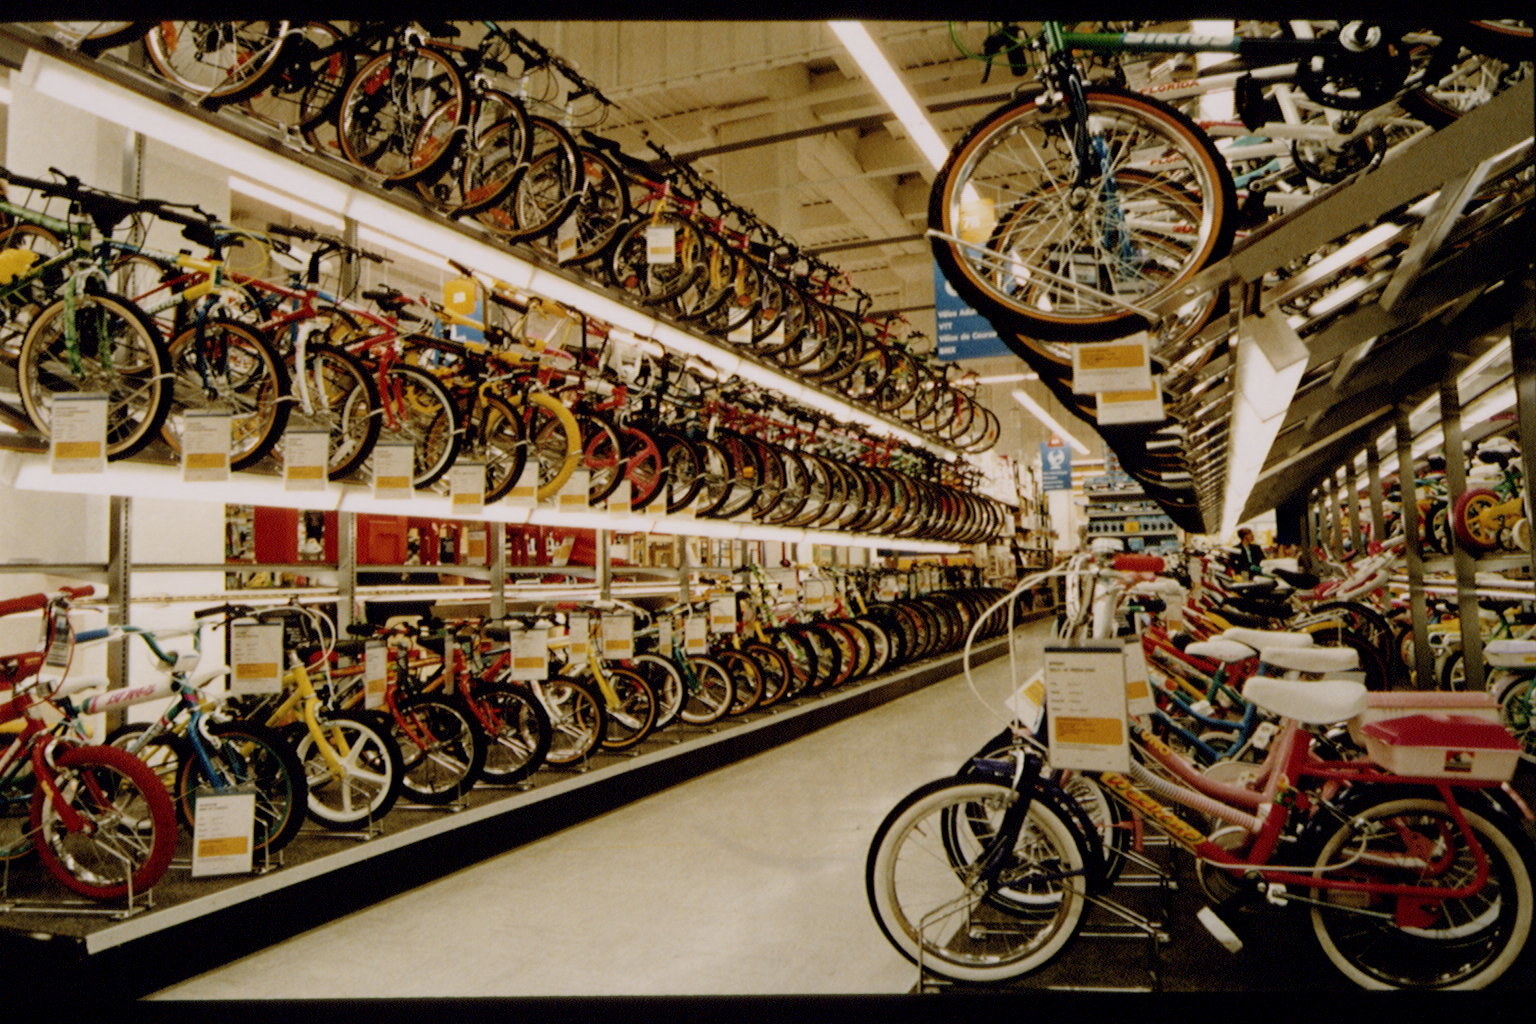 Bike aisle at Toys R Us